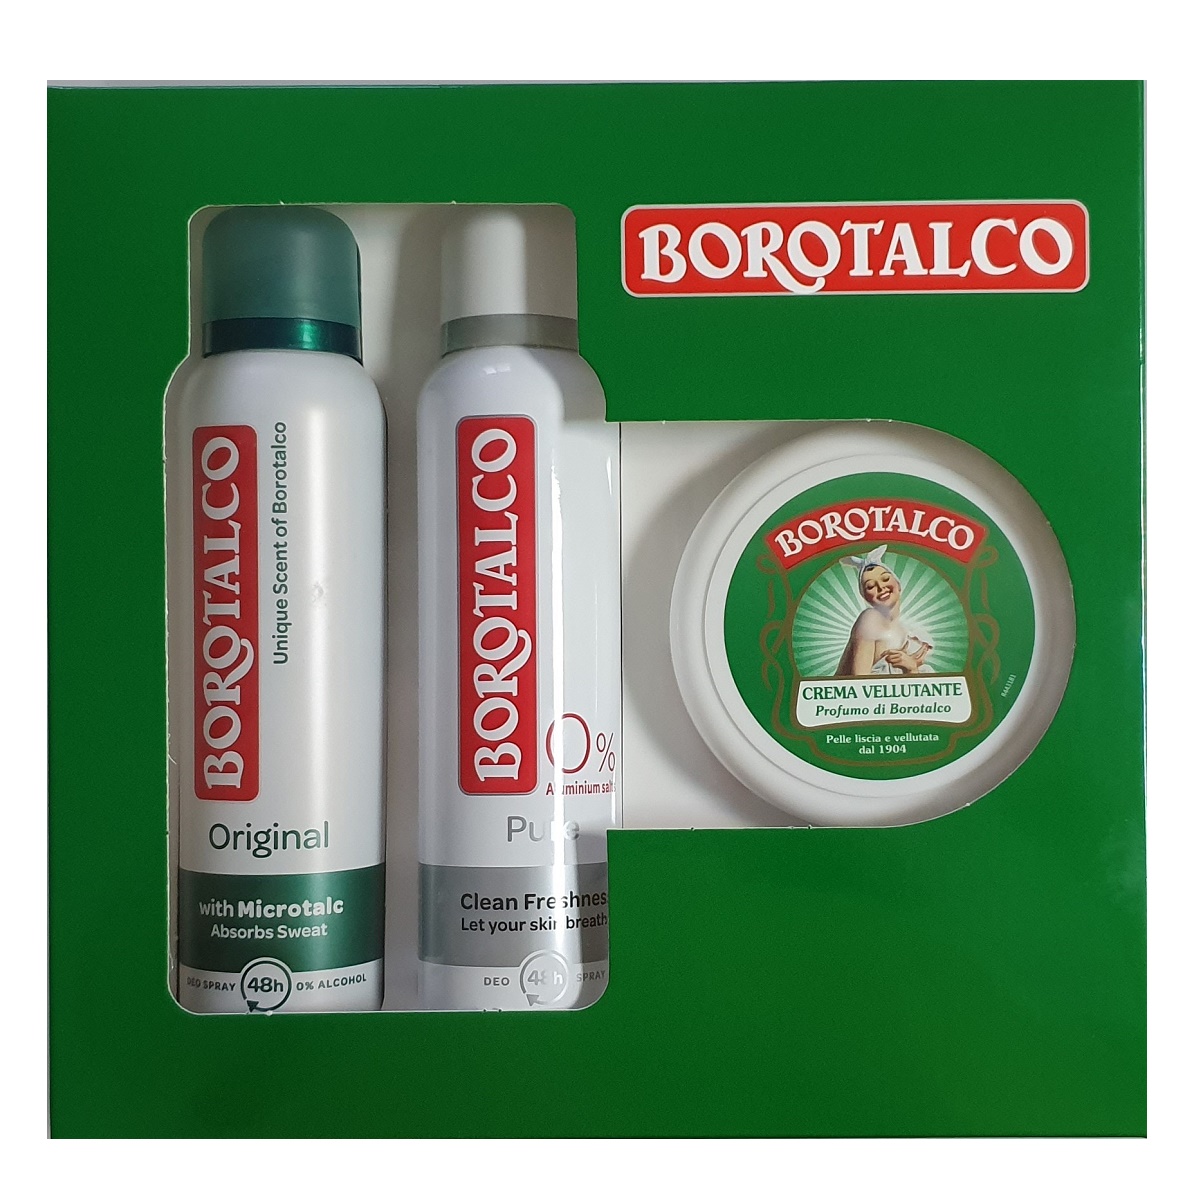 Pachet Deodorant spray Original + Deodorant spray Pure + Crema uz general, Borotalco